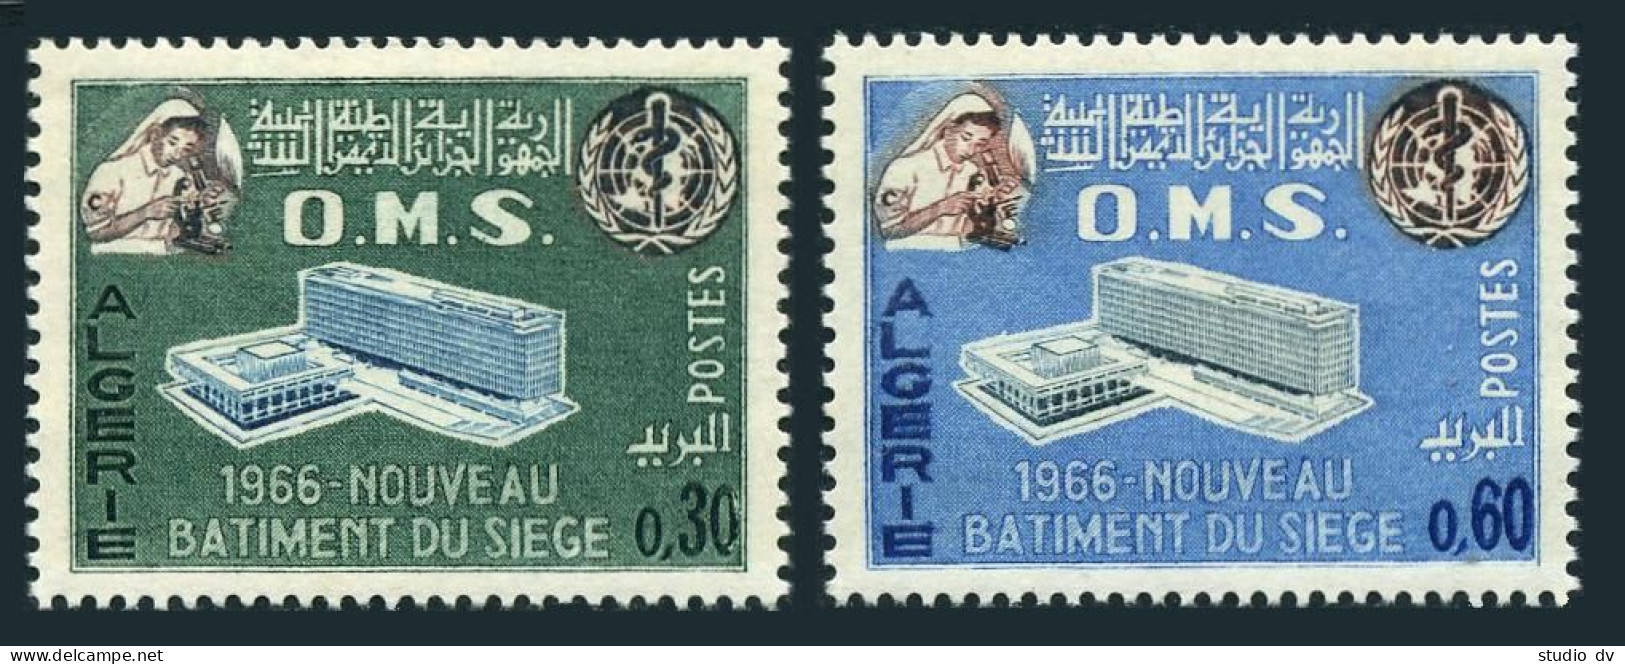 Algeria 354-355, MNH. Michel 454-455. New WHO Headquarters, 1966. - Algeria (1962-...)